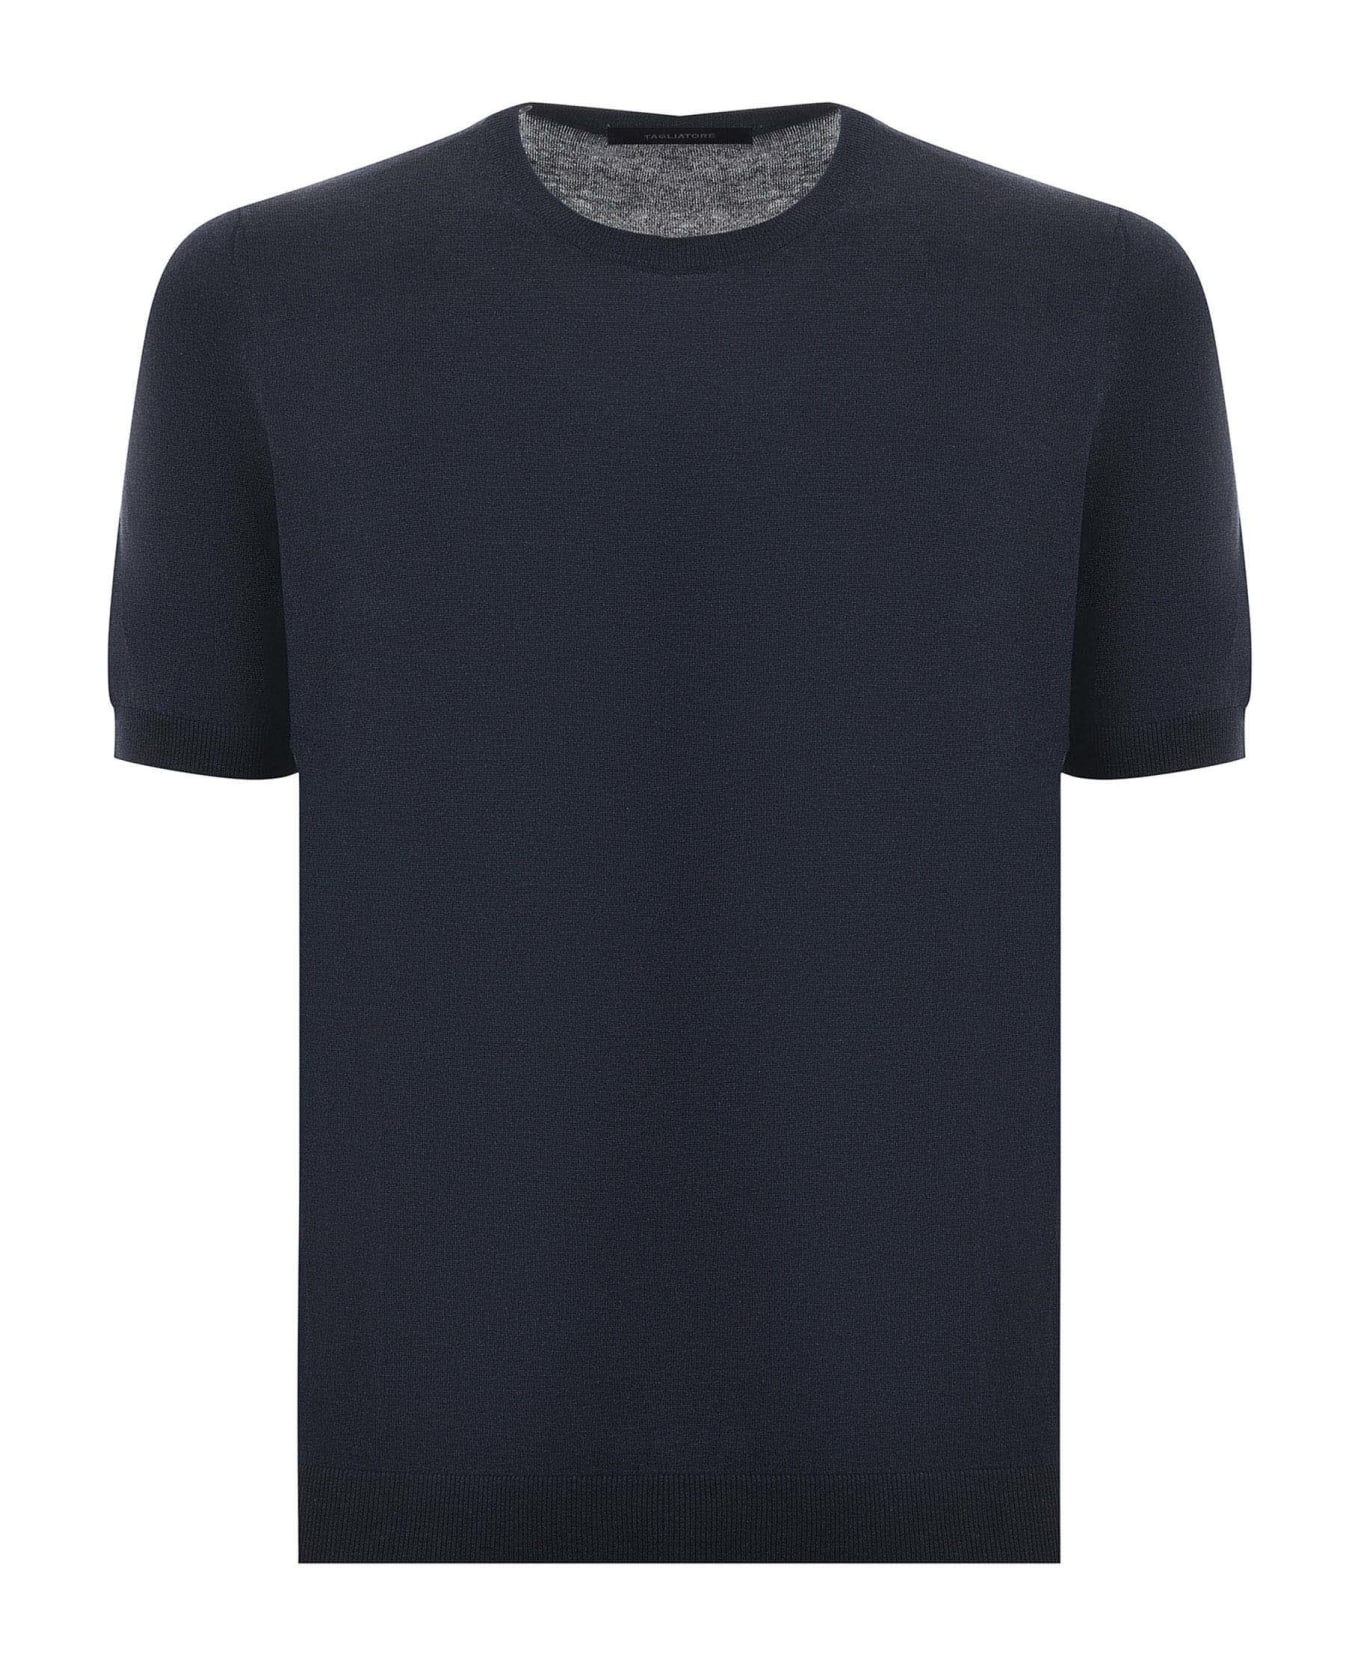 Tagliatore T-shirt - Blu melange シャツ